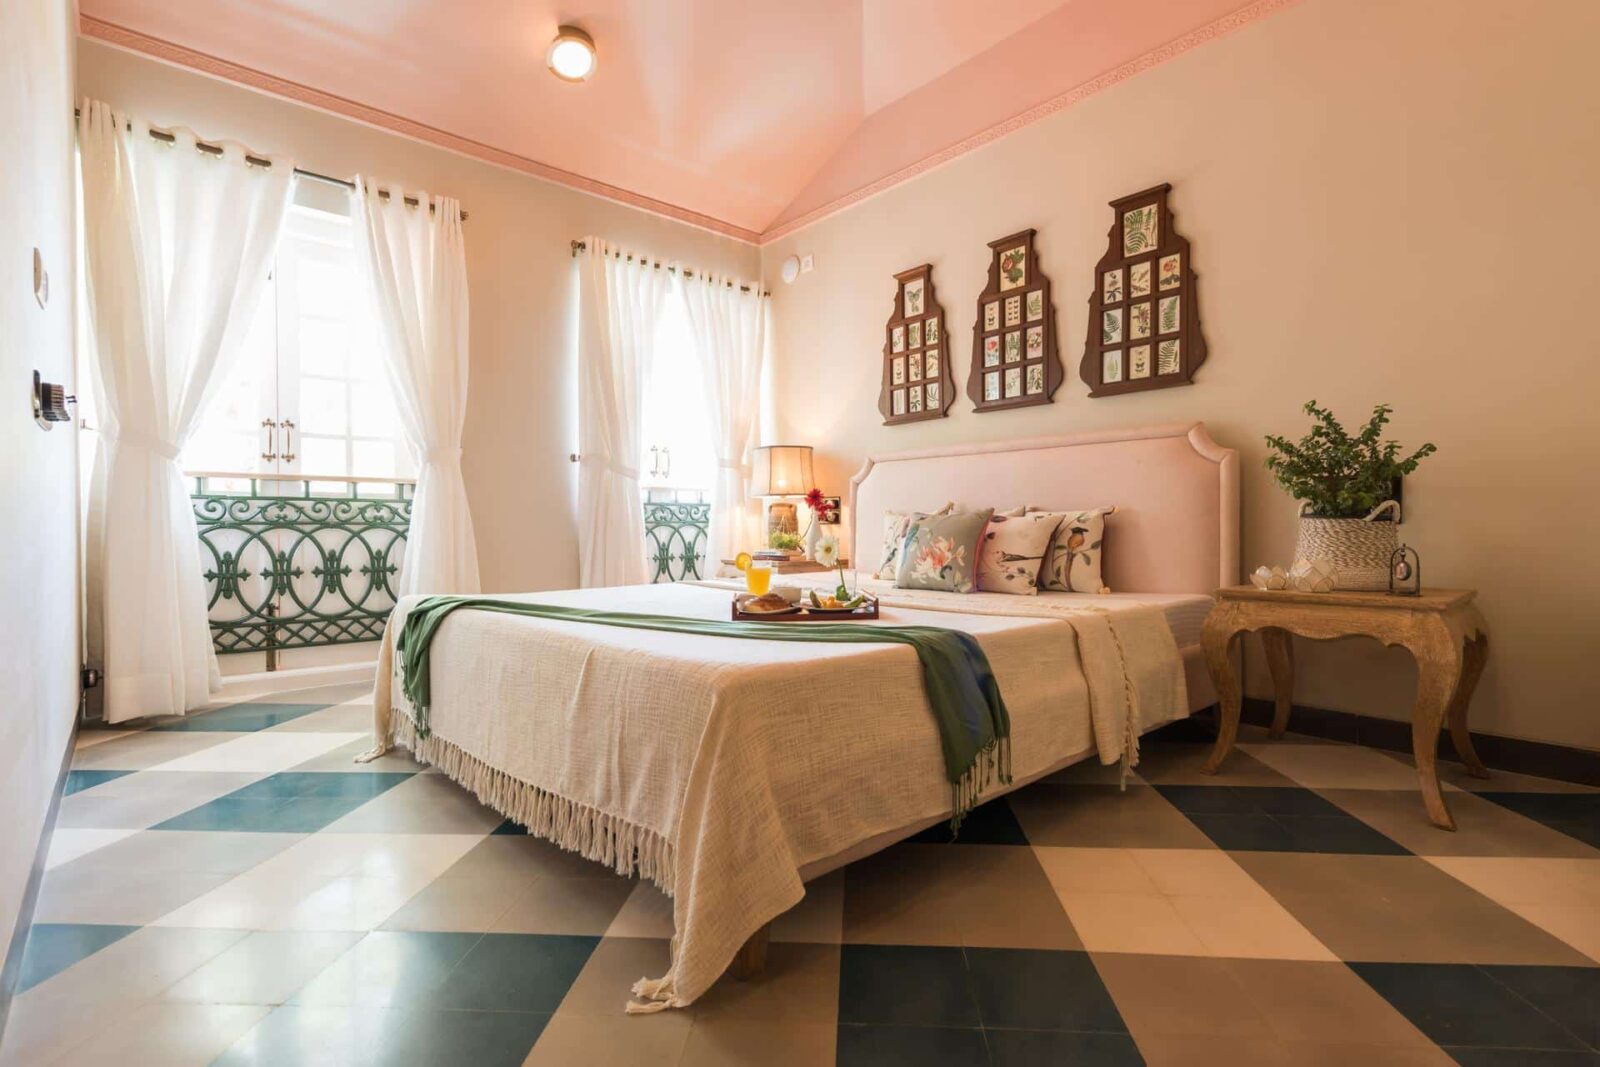 Villa Alenteho - Villas for Sale in Goa - Nice Bedroom